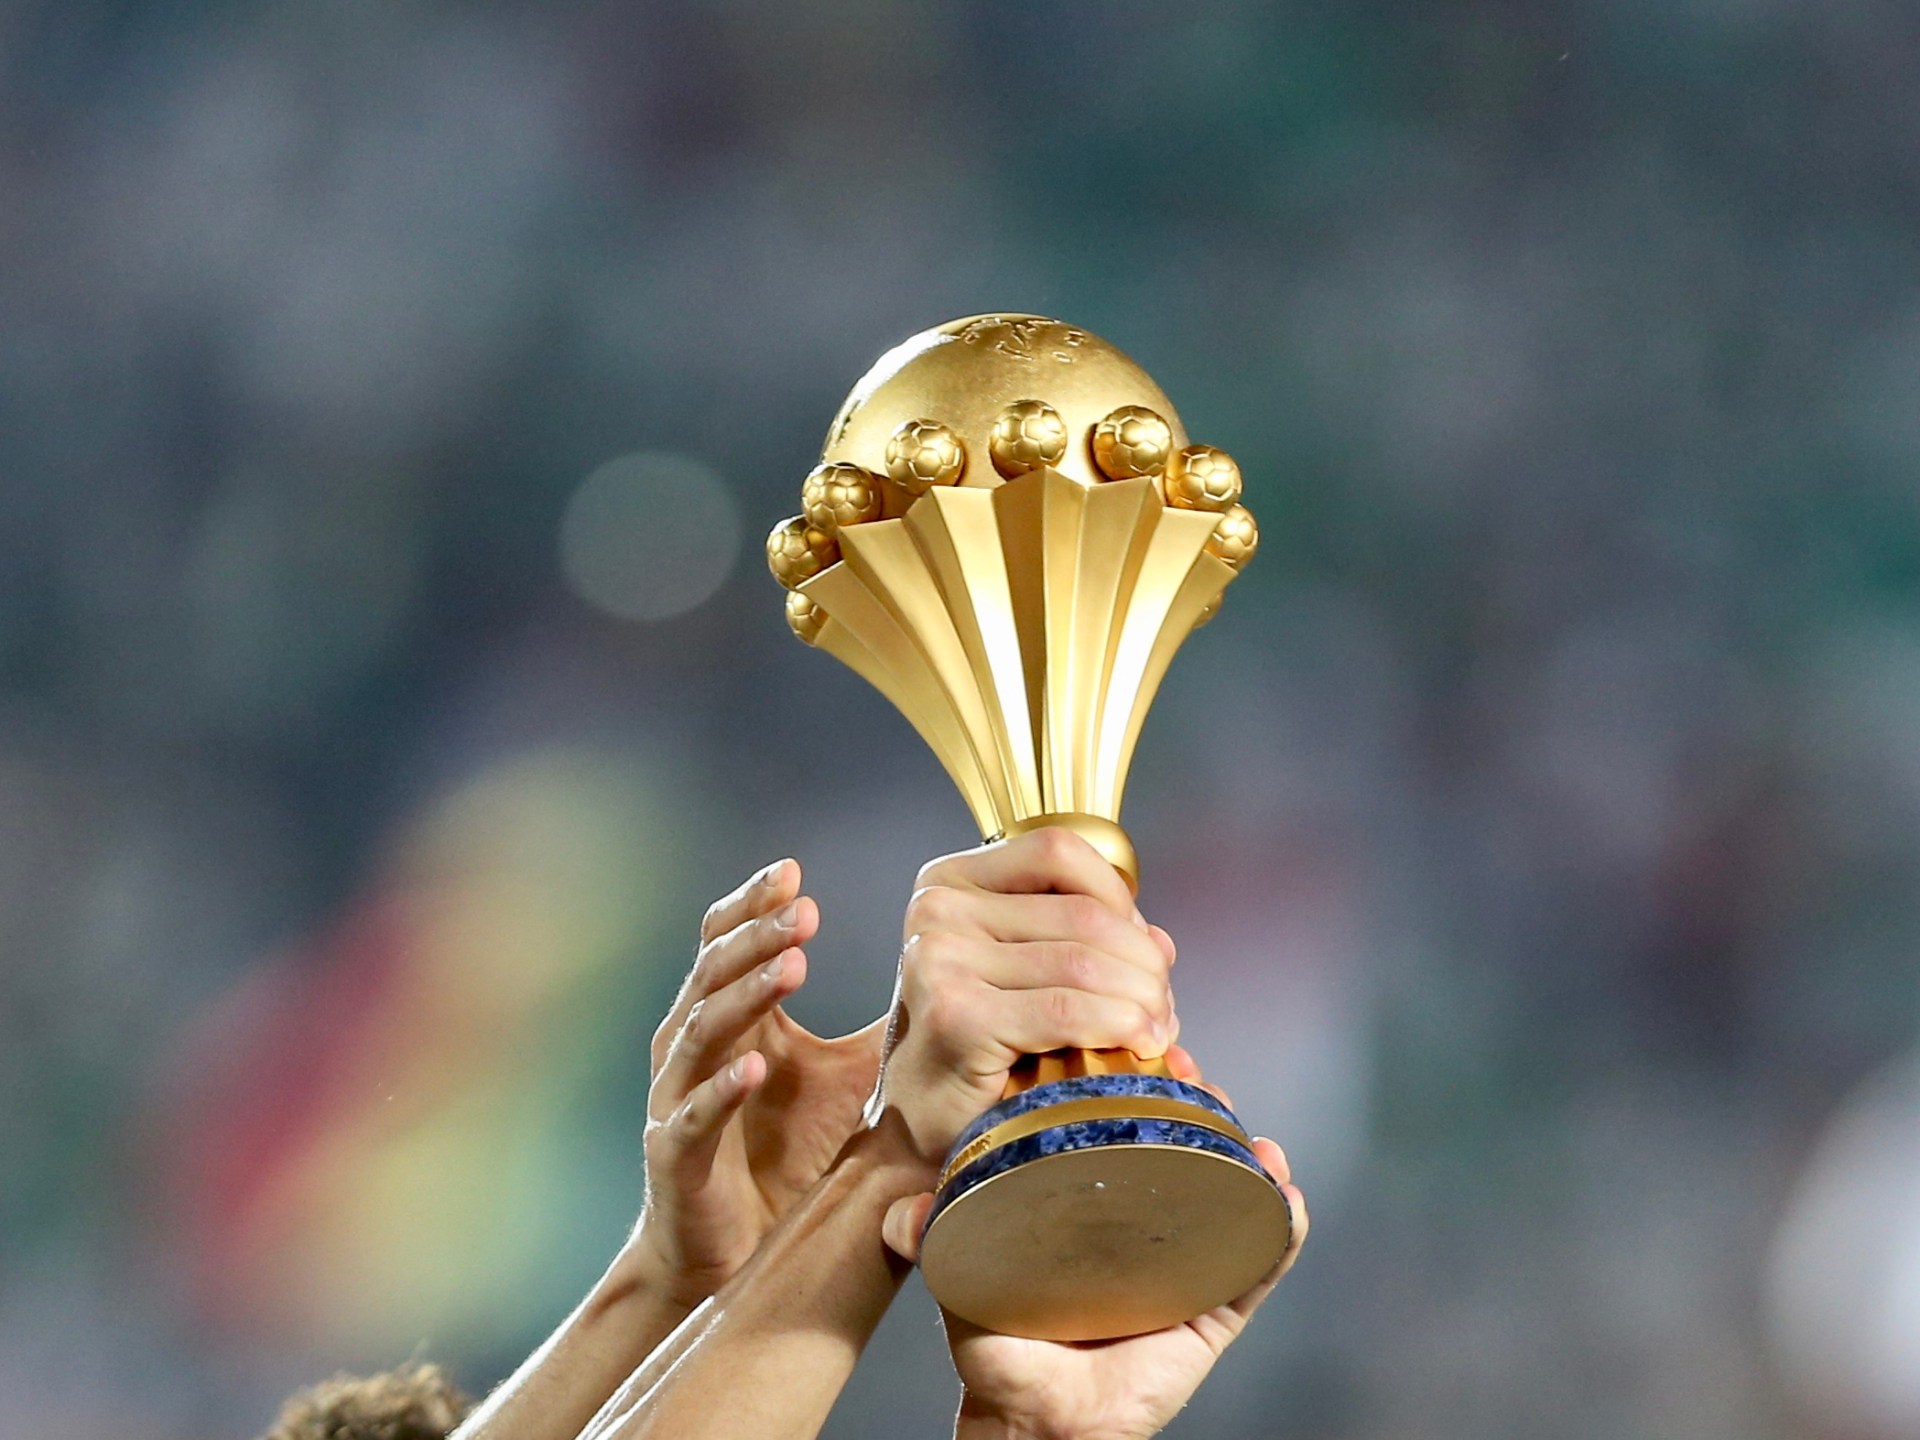 المنتخبات الأوفر حظا للتتويج بكأس أمم أفريقيا | رياضة – البوكس نيوز